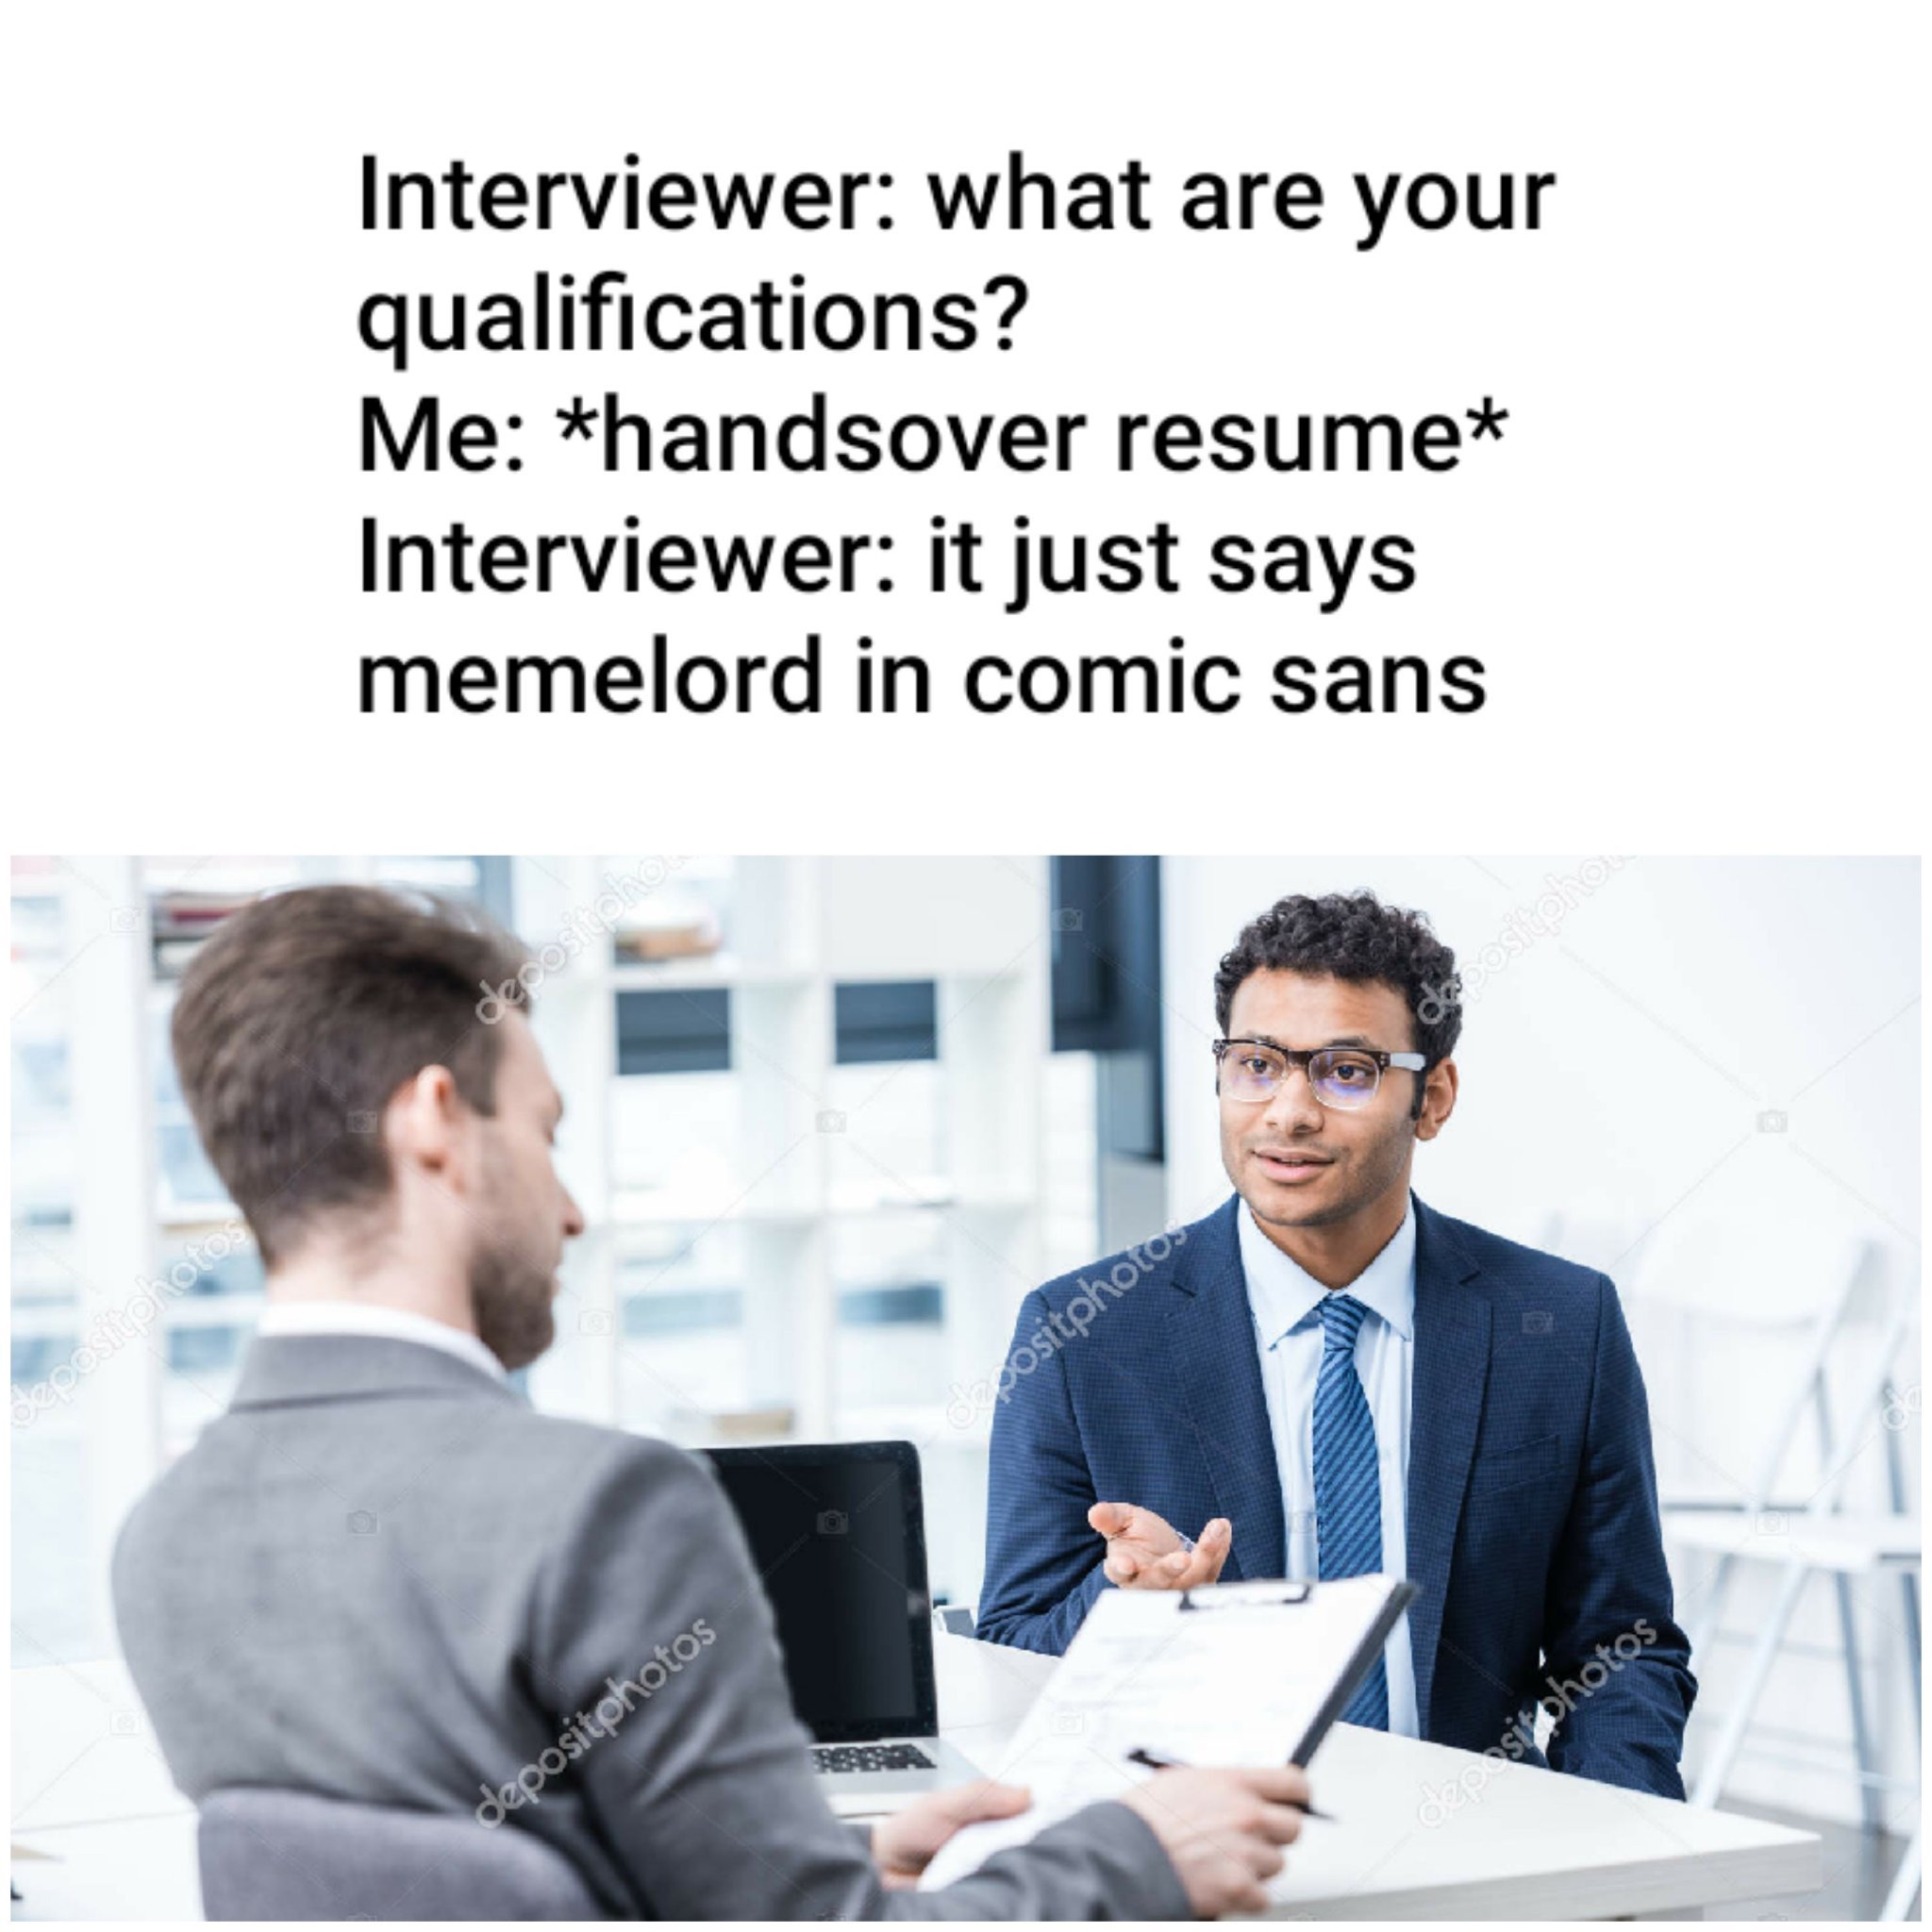 Pls hire me - meme